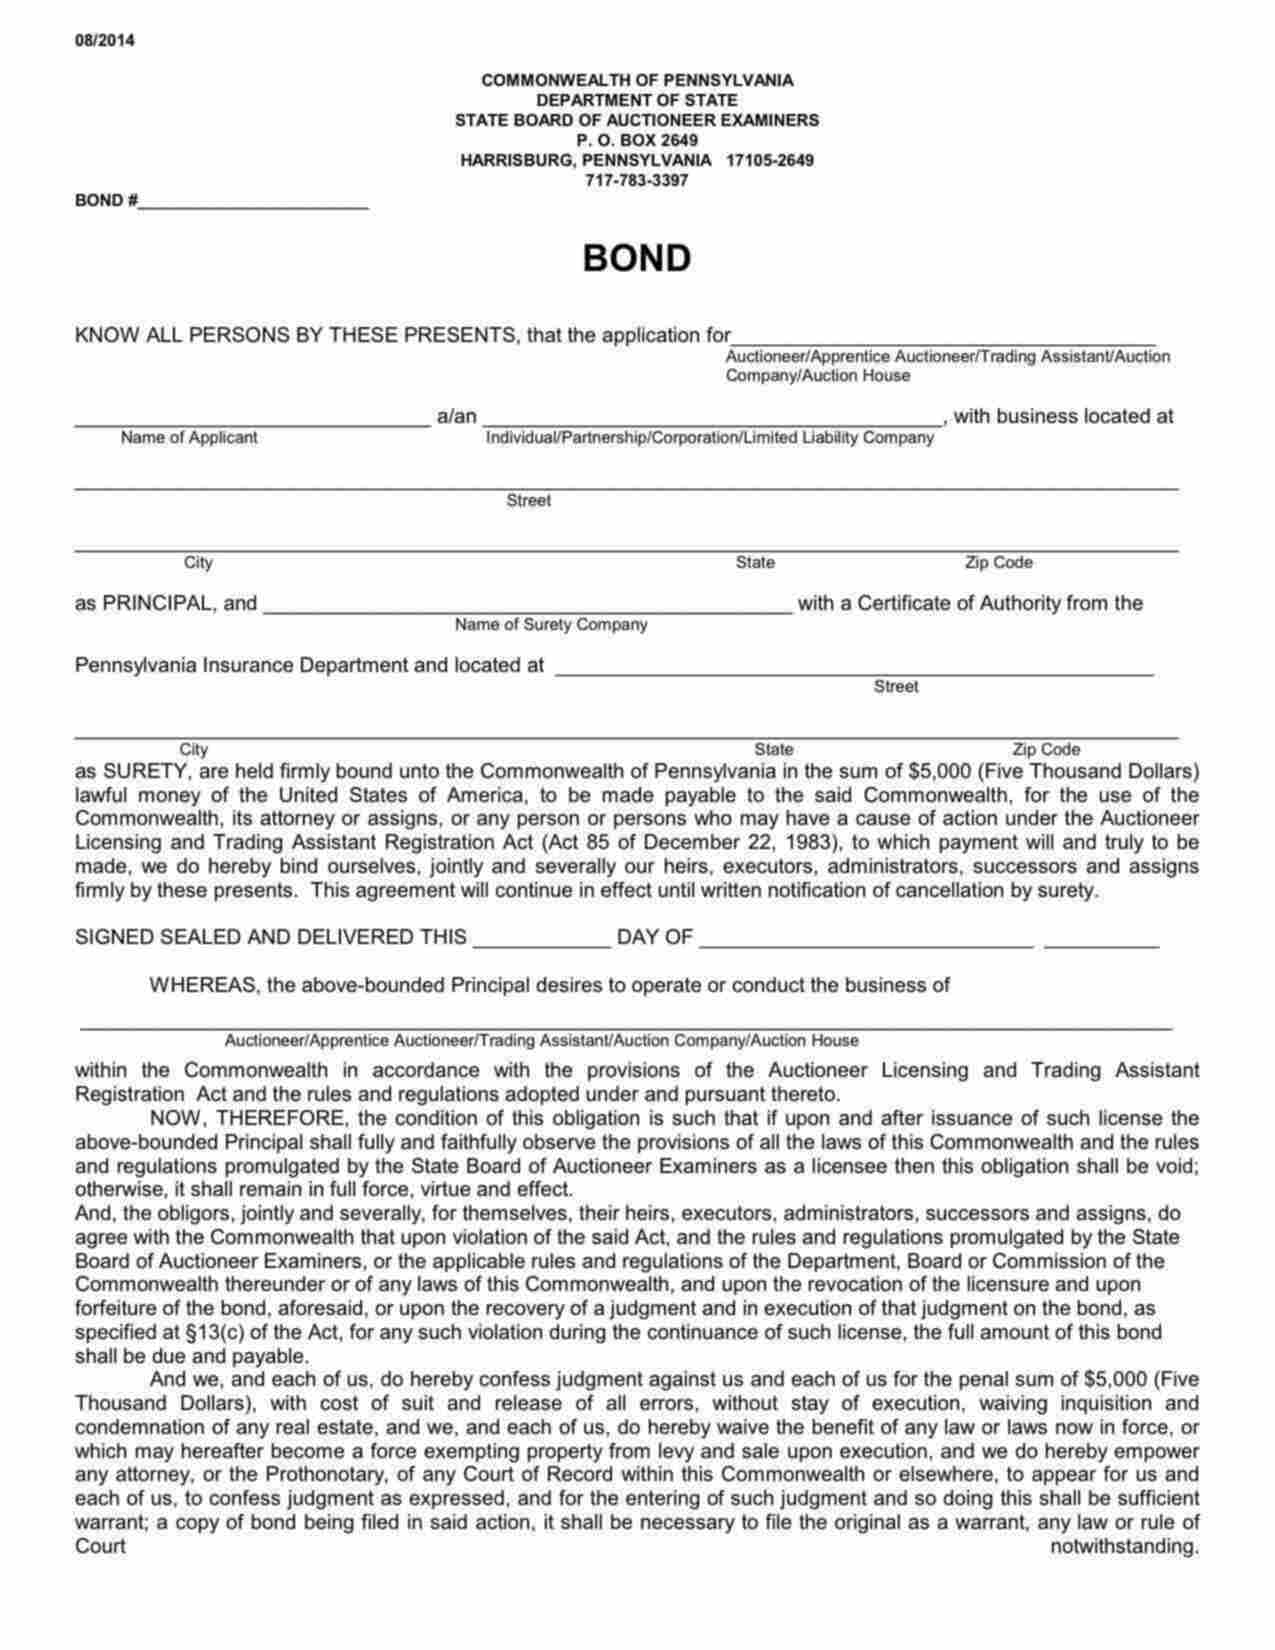 Pennsylvania Auction House Bond Form